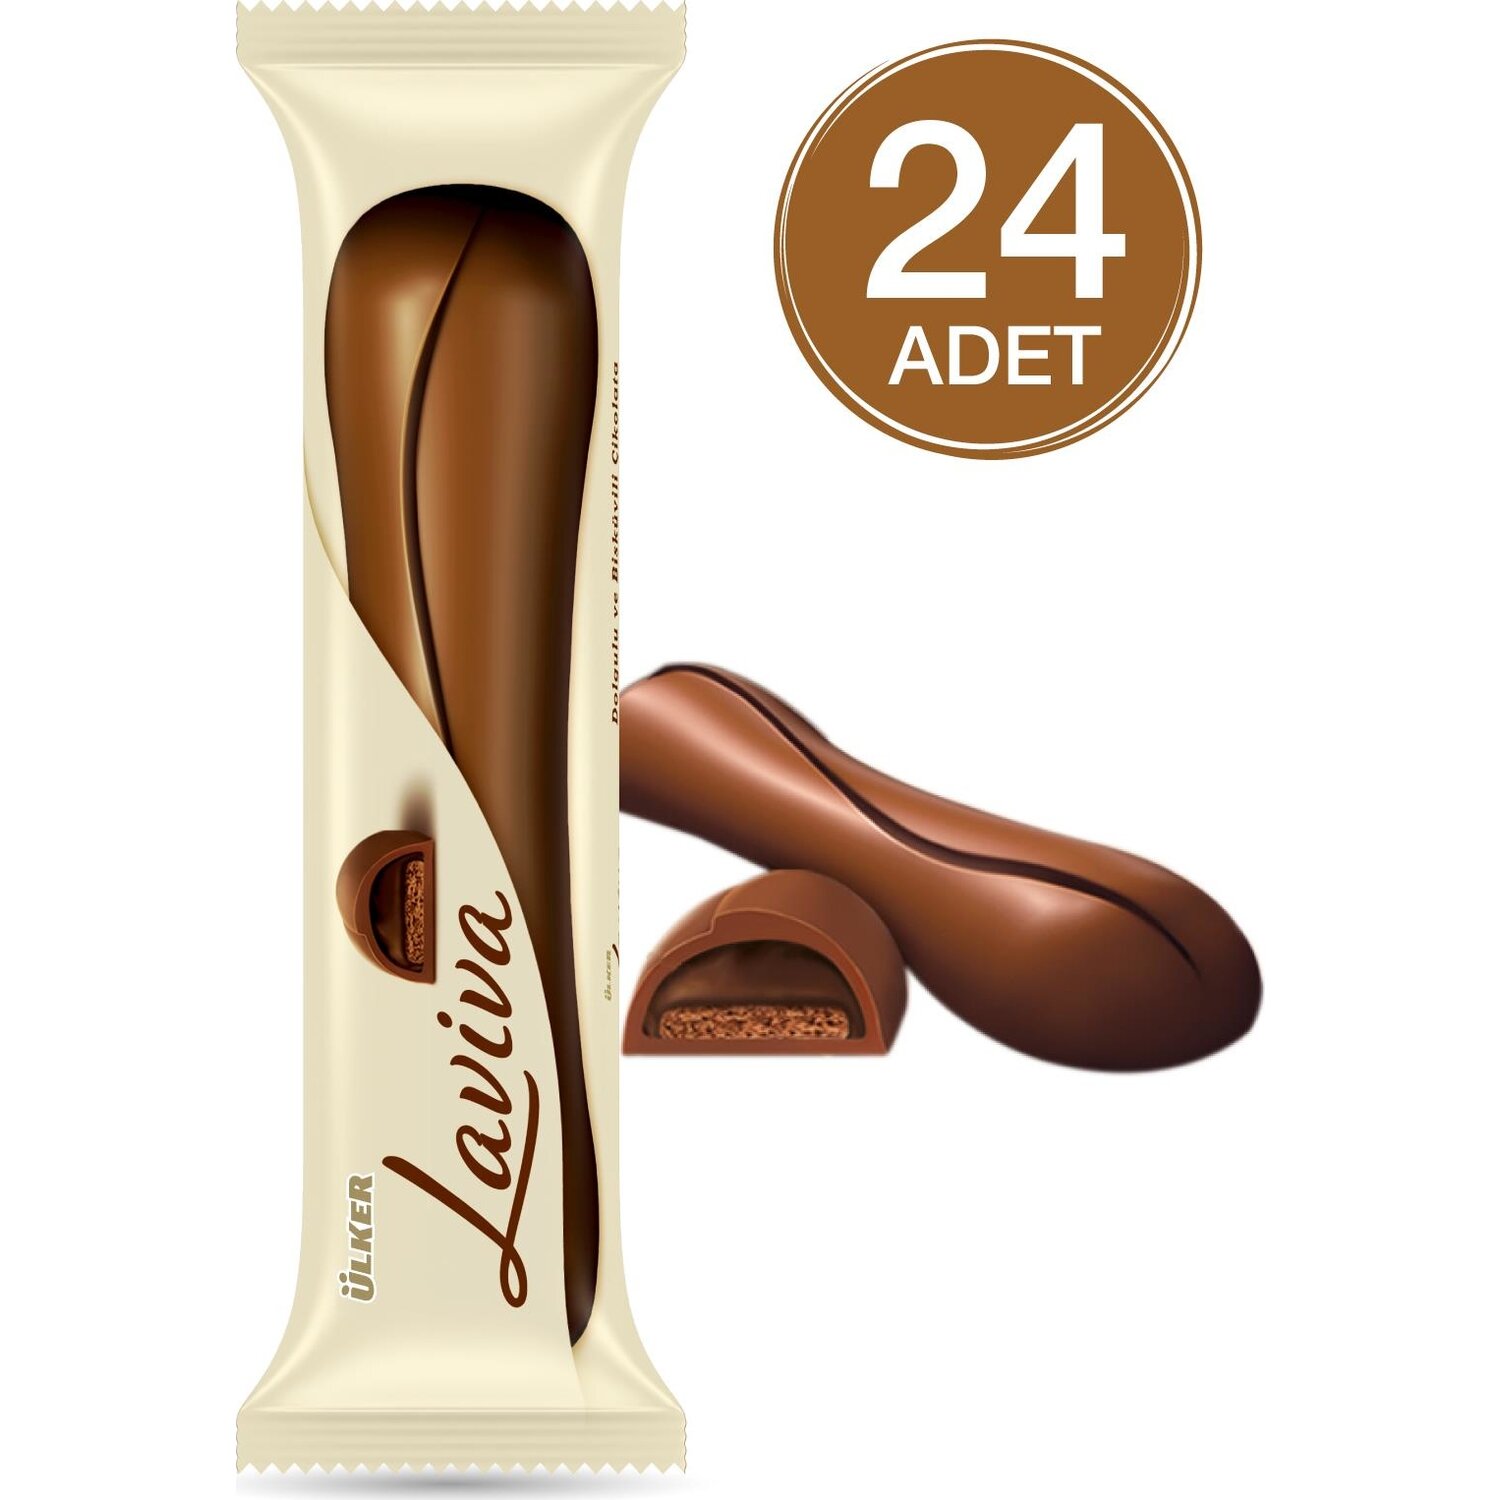 Ülker Laviva Dolgulu ve Bisküvili Çikolata 24 Adet Fiyatı